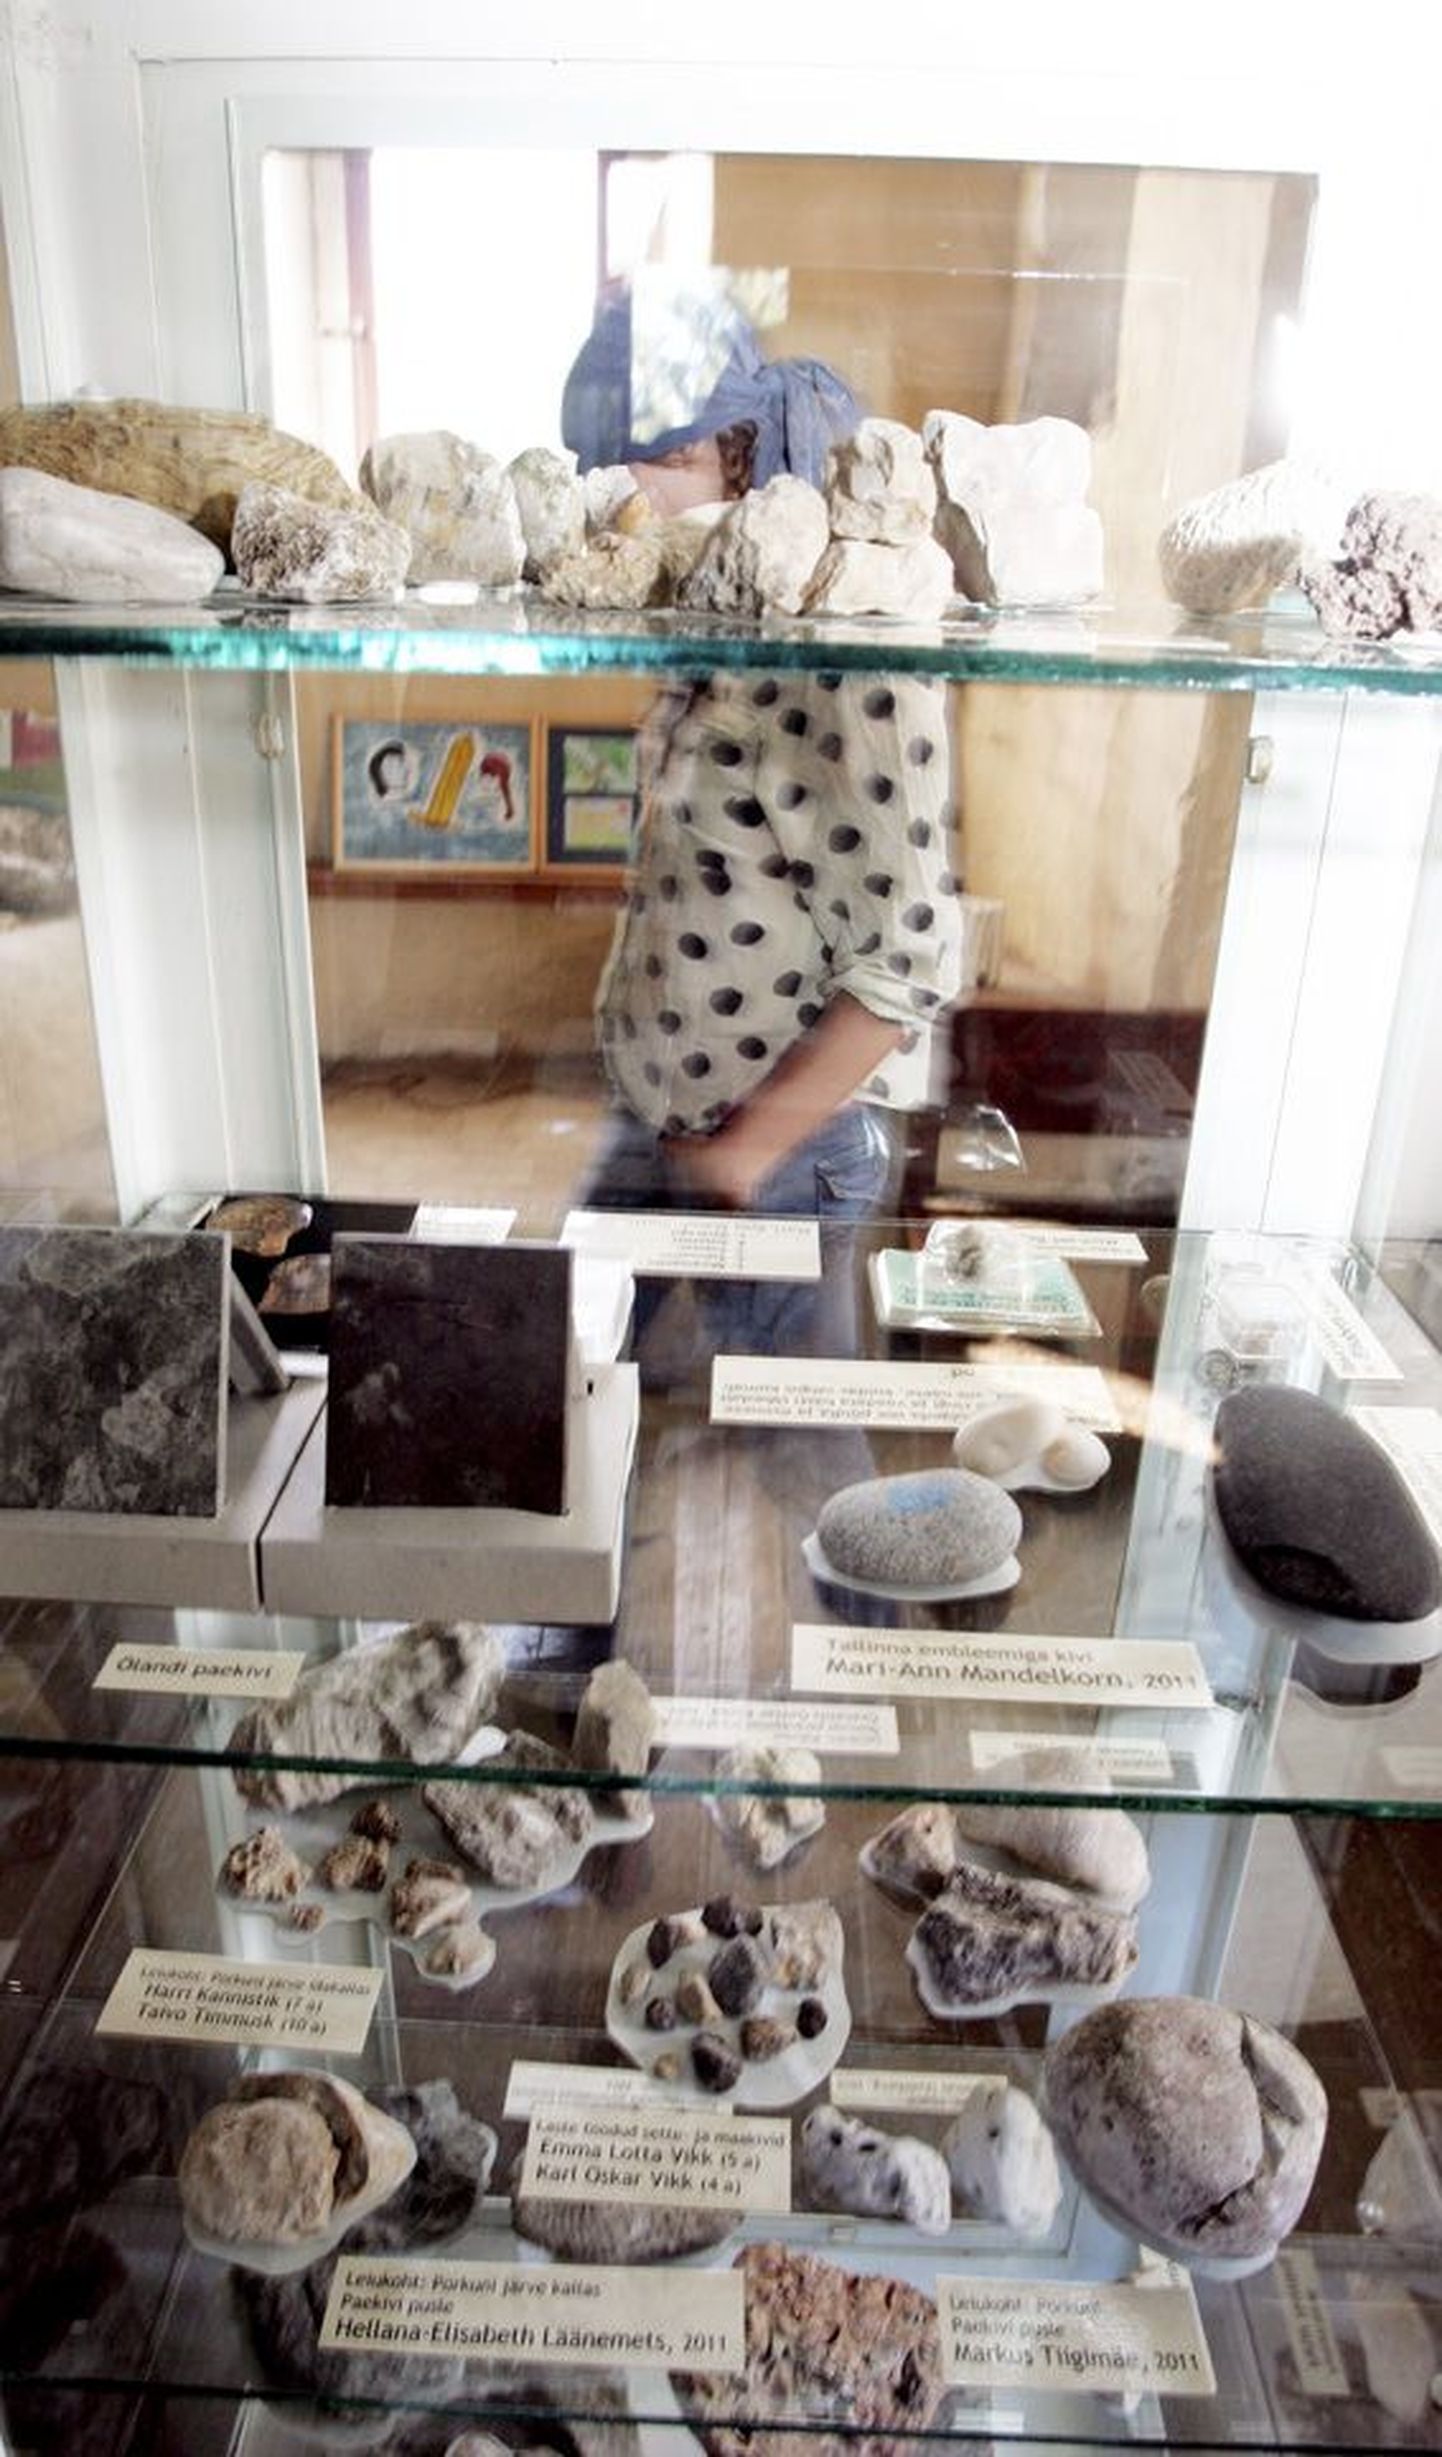 Paemuuseumile kingitud kivide näitus, kus saab imetleda ka erkvalget Porkuni koralli.